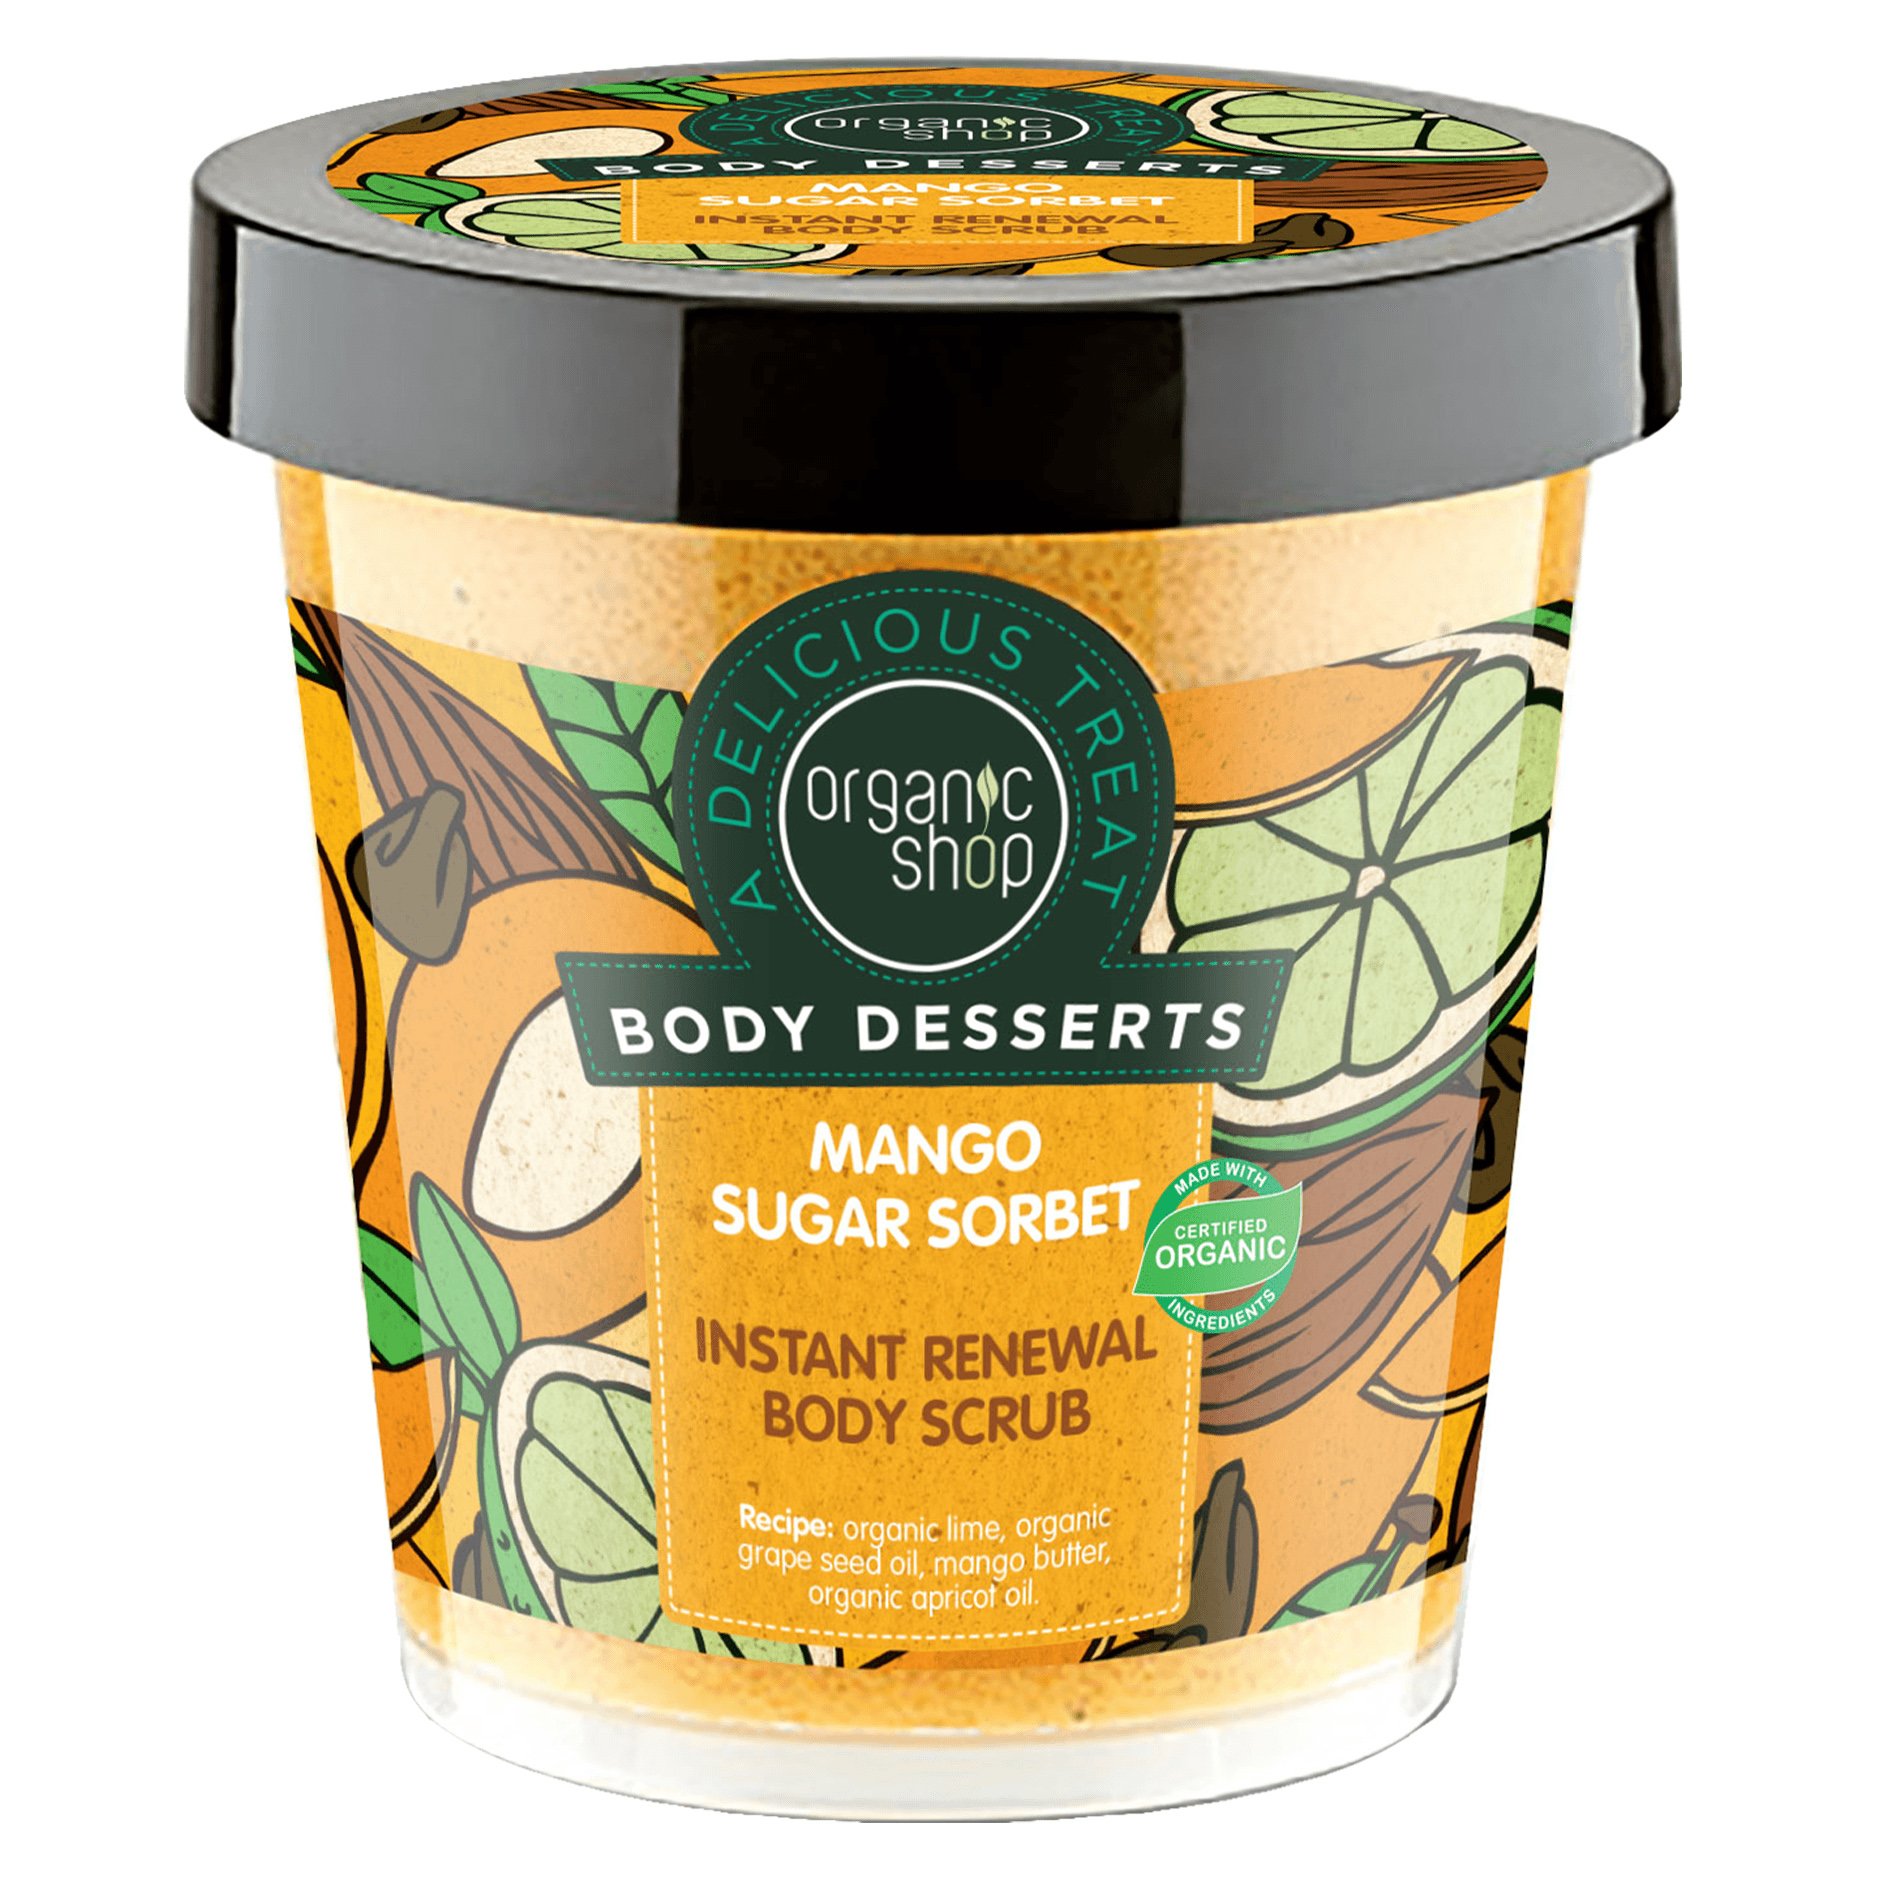 Organic Shop Body Desserts Mango Sugar Sorbet Instant Renewal body Scrub Απολεπιστικό Σώματος Άμεσης Ανανέωσης με Μάνγκο & Ζάχαρη 450ml